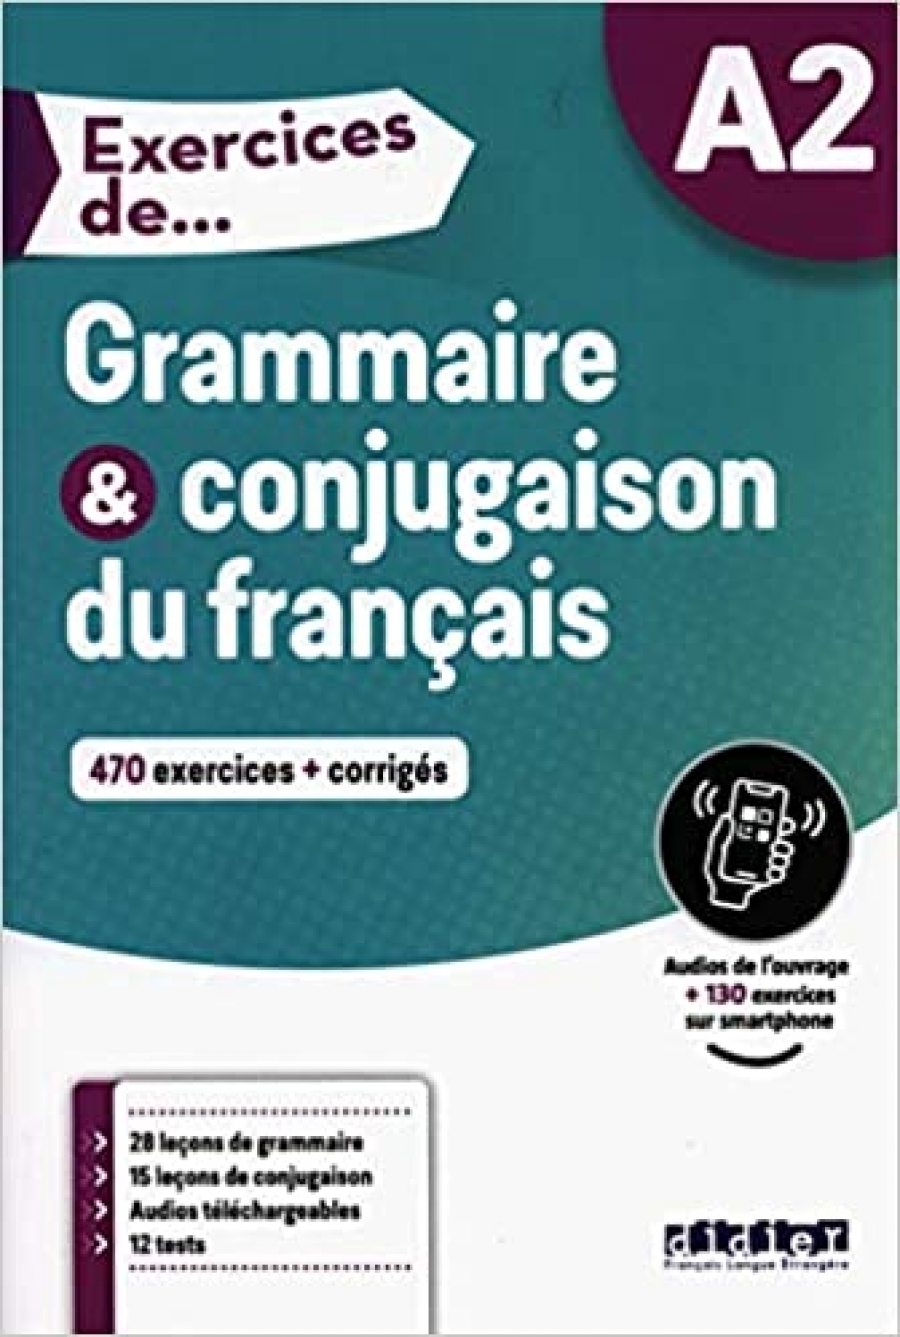 Fafa, C. et al. Exercices de Grammaire et conjugaison A2 